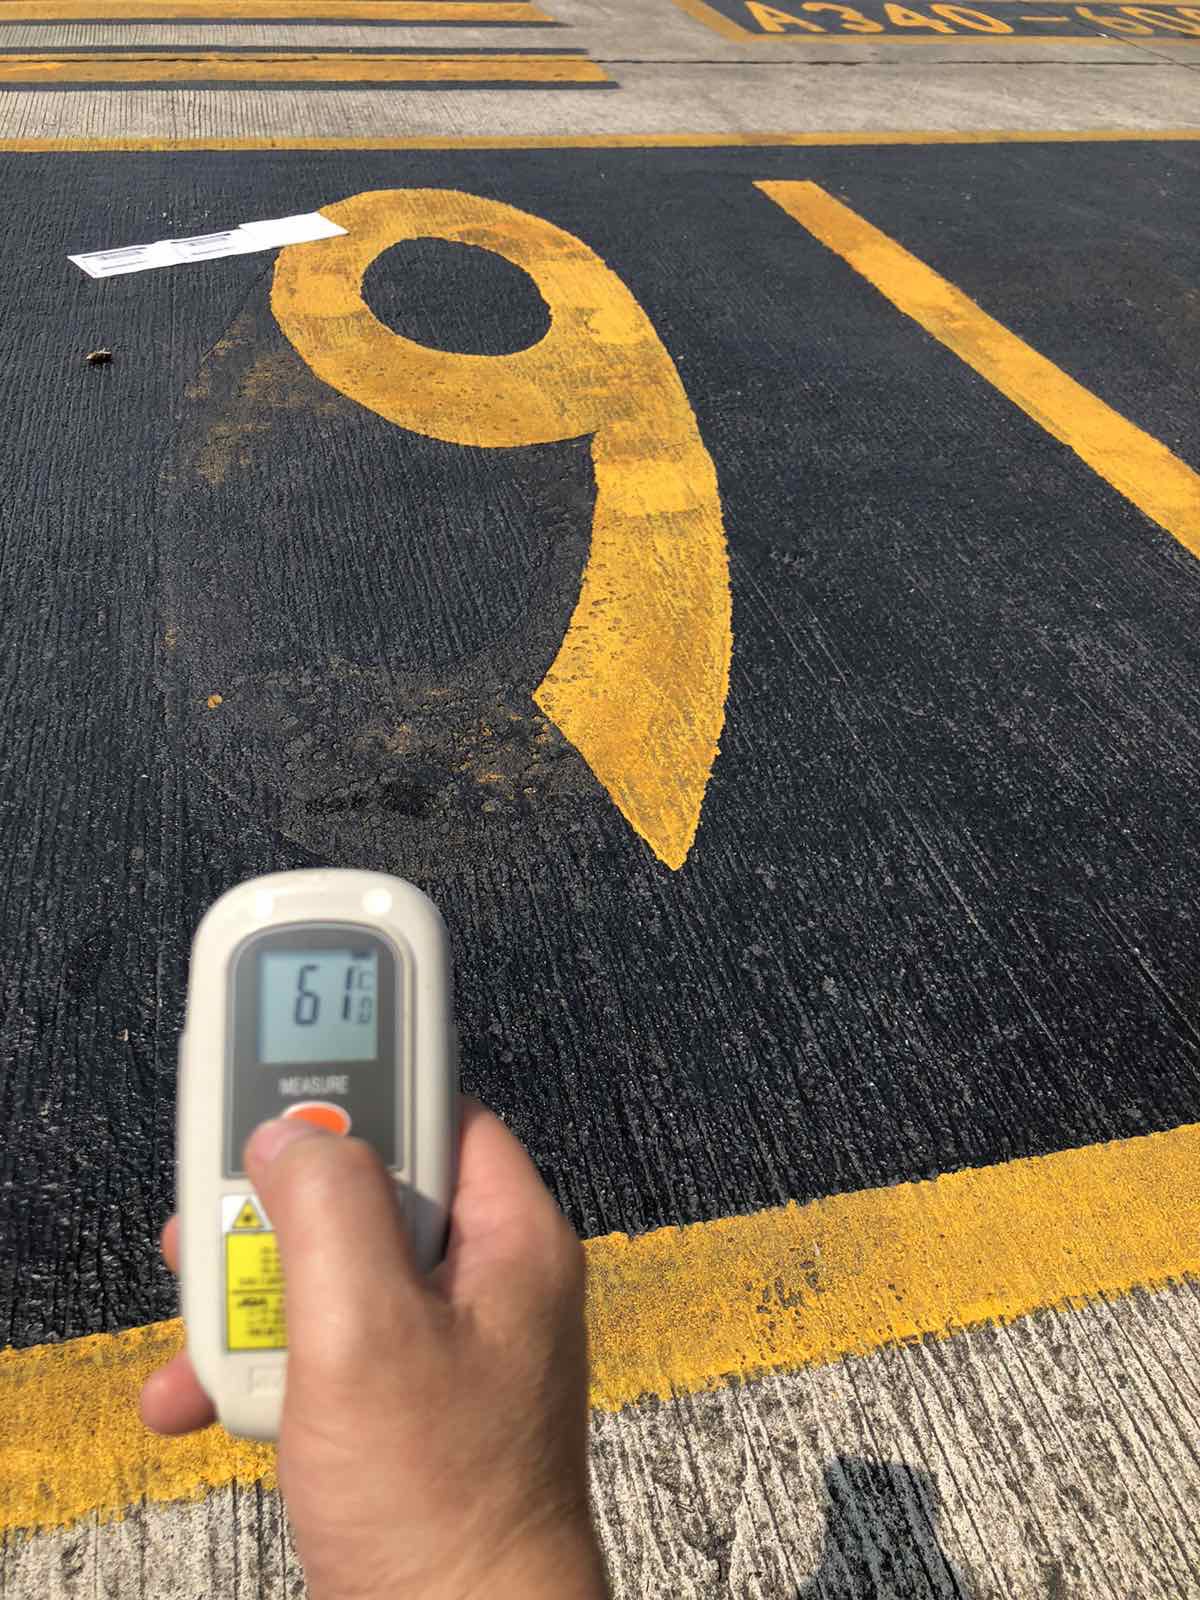 Chùm ảnh: Người lao động làm việc trên đường băng sân bay với nền nhiệt hơn 60 độ C - Ảnh 1.